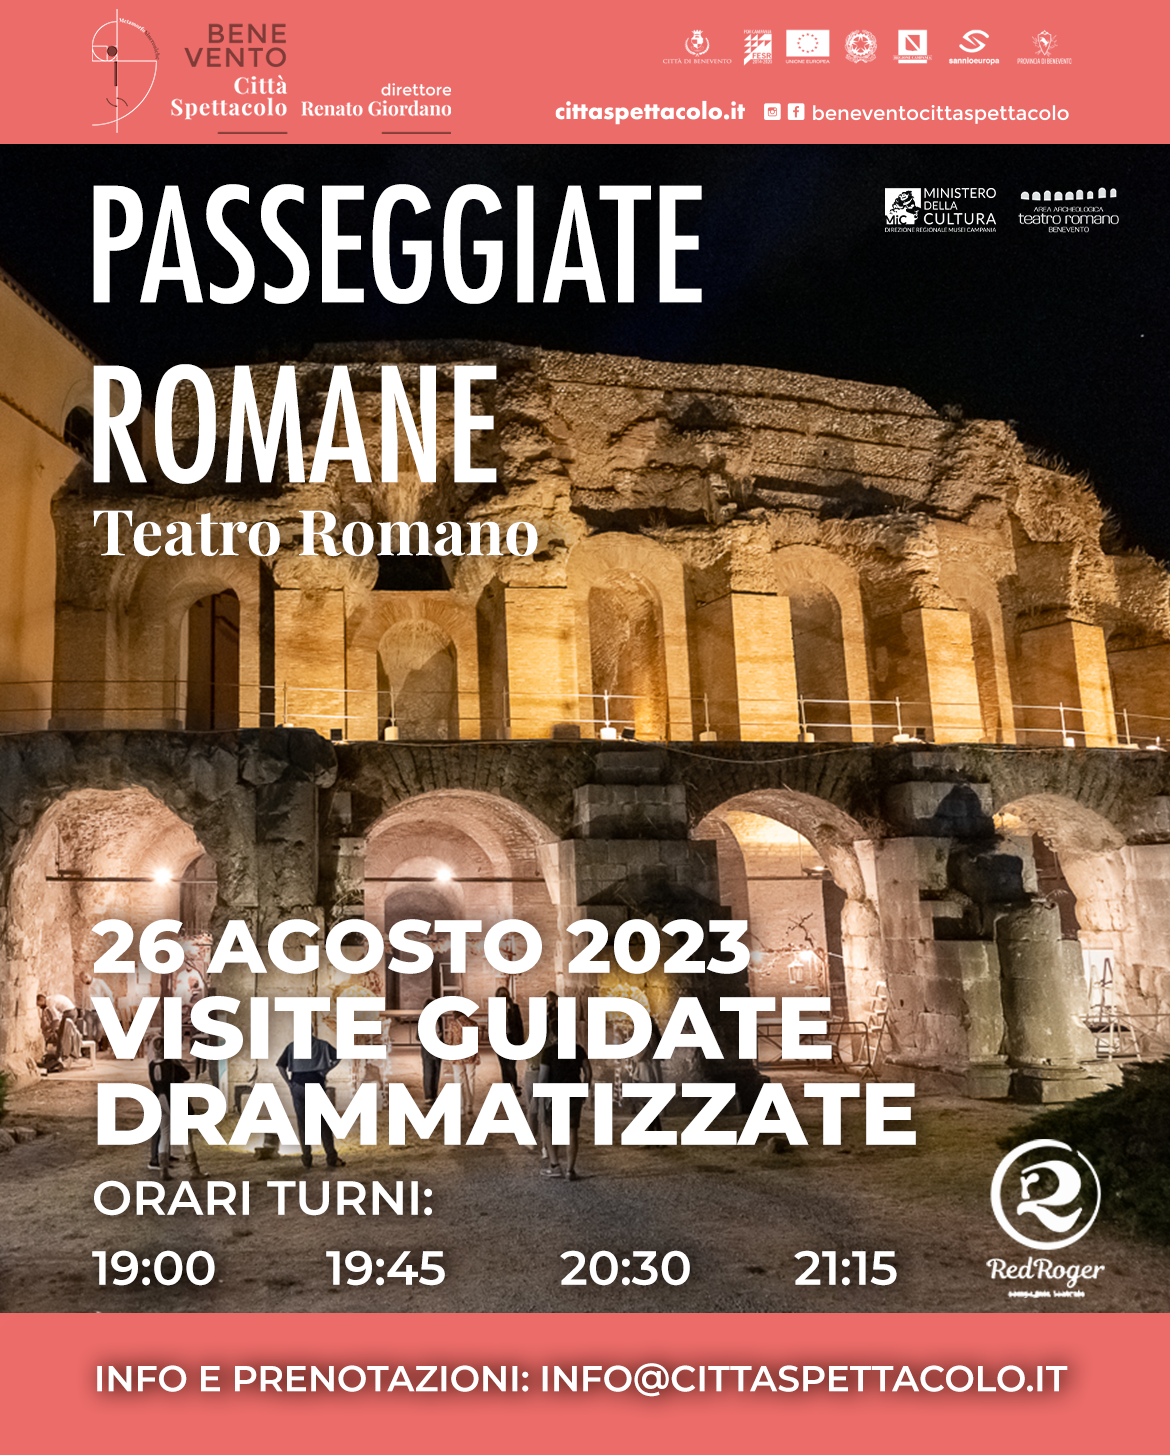 Passeggiate Romane evento proposto da Benevento Città Spettacolo. Info e prenotazioni